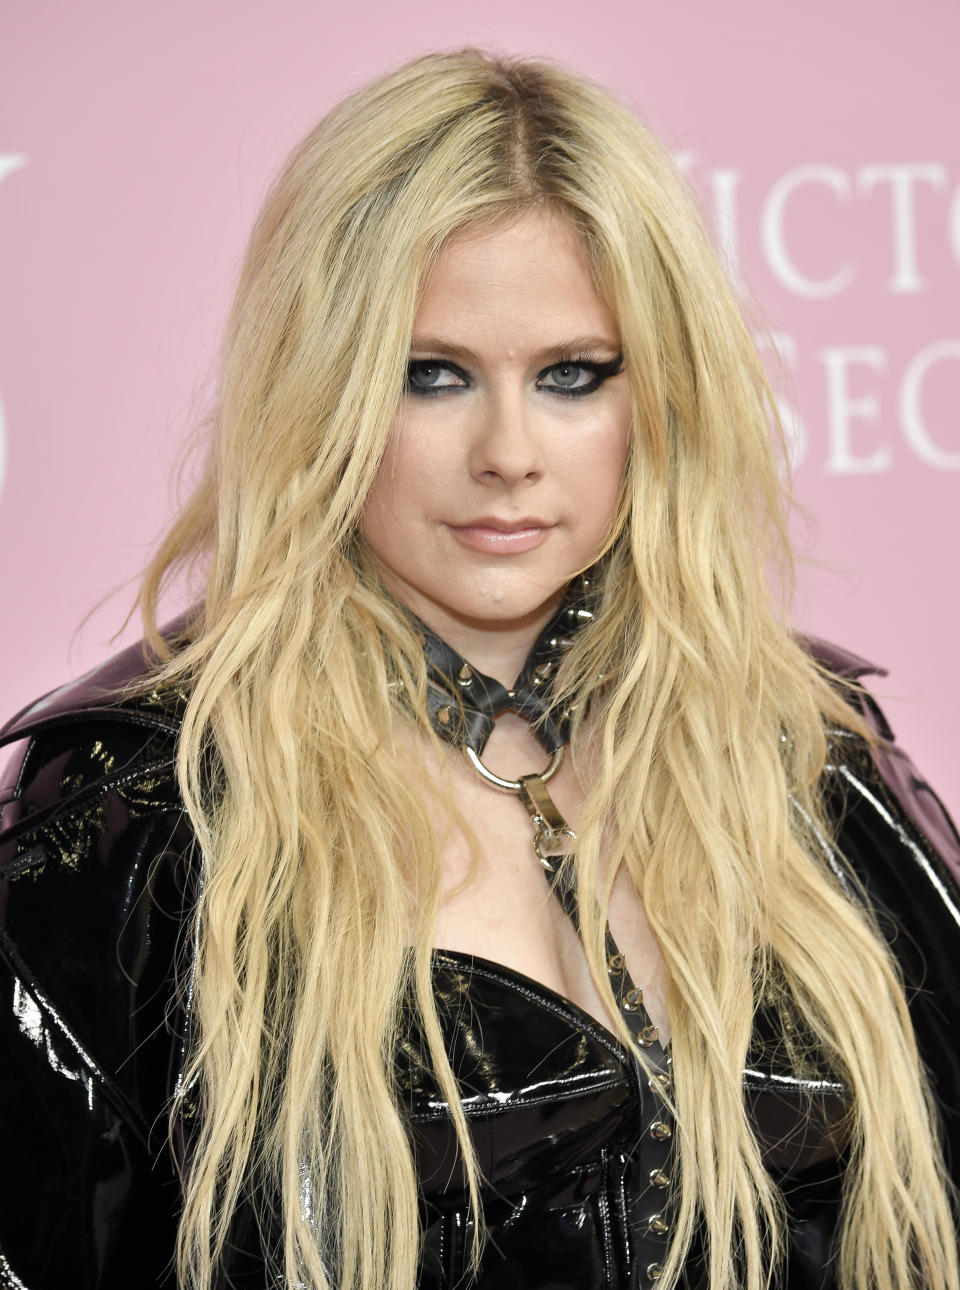 Avril Lavigne attends the Victoria's Secret 